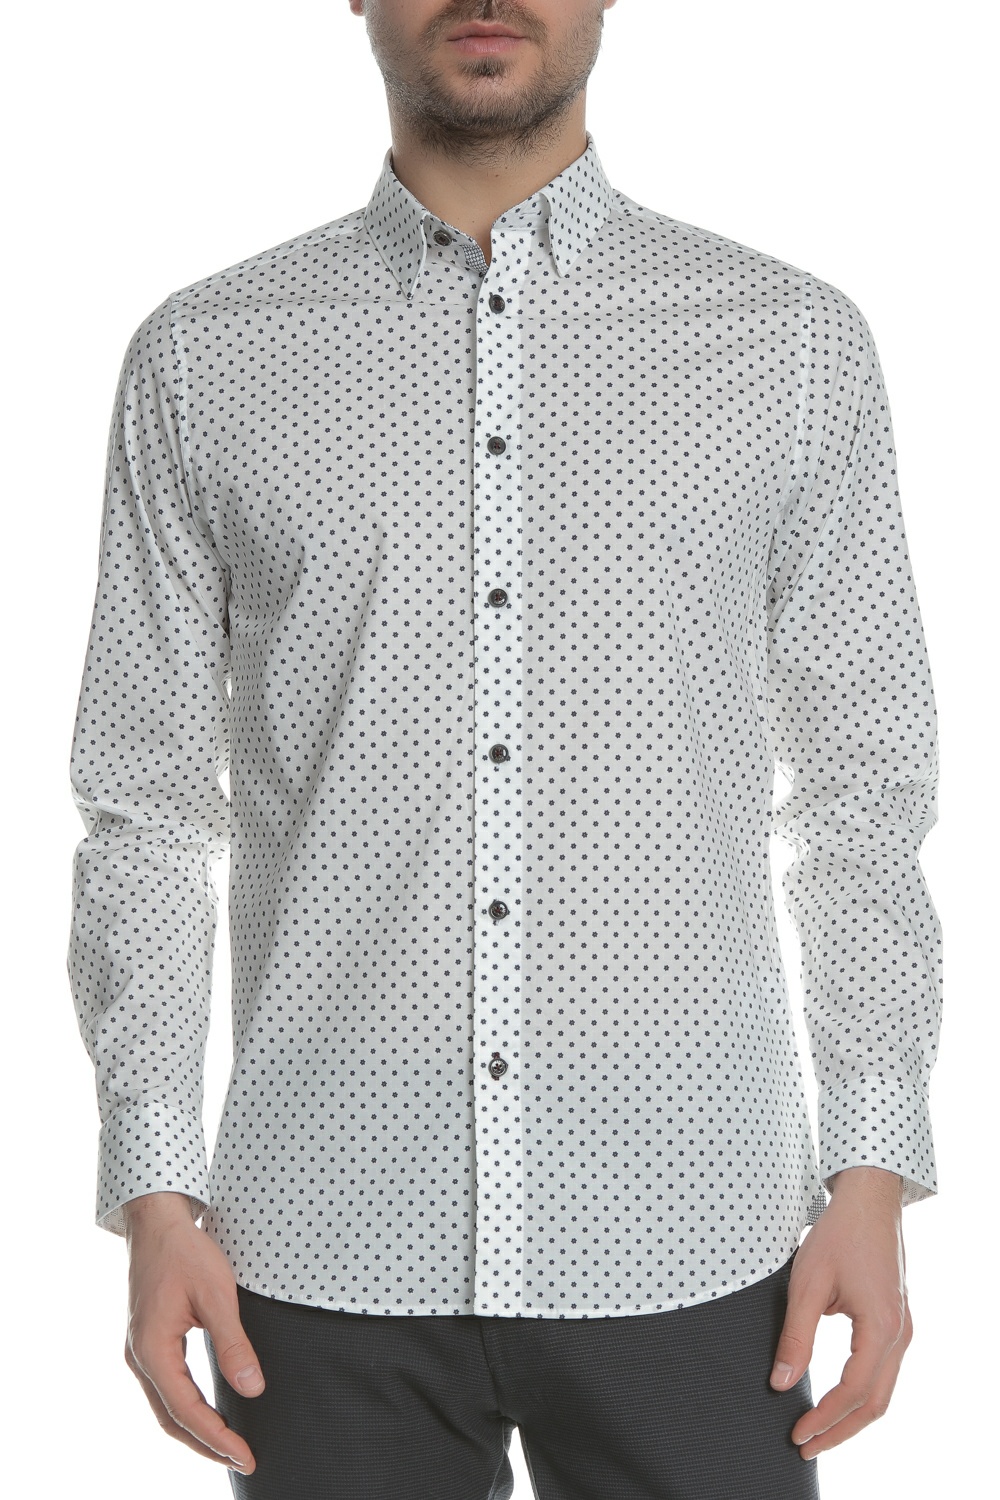 Ανδρικά/Ρούχα/Πουκάμισα/Μακρυμάνικα TED BAKER - Ανδρικό μακρυμάνικο πουκάμισο TED BAKER FYRTRUK PRINTED MINI FLOWER λευκό